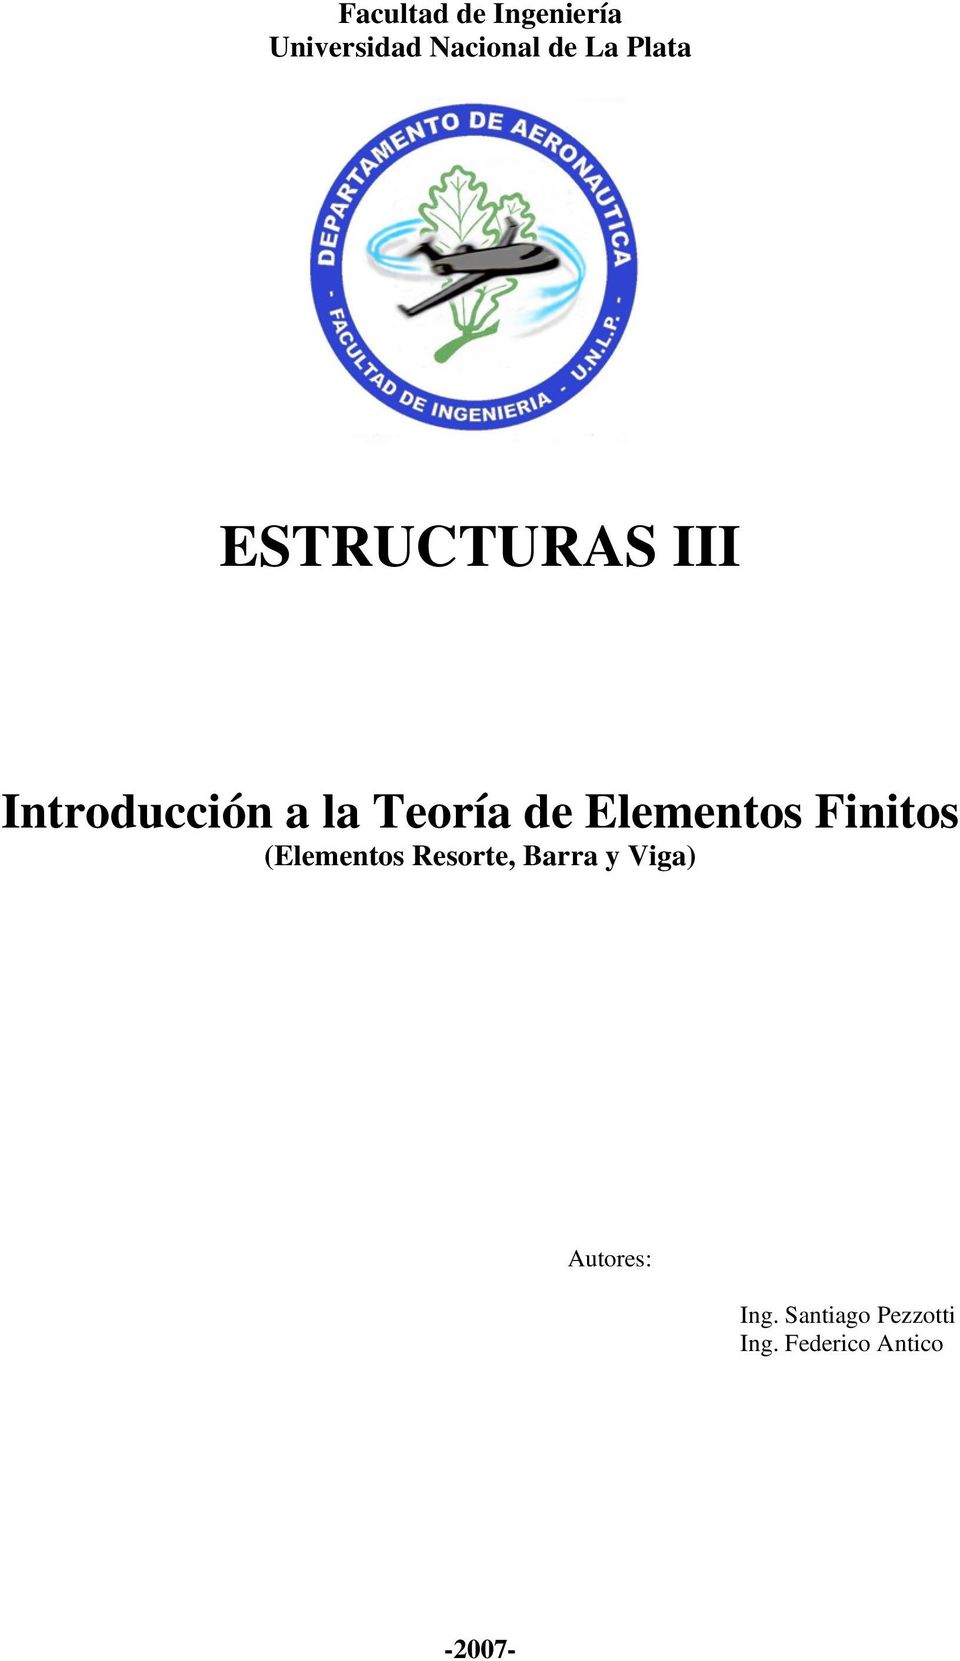 Elementos Finitos (Elementos Resorte, Barra y Viga)